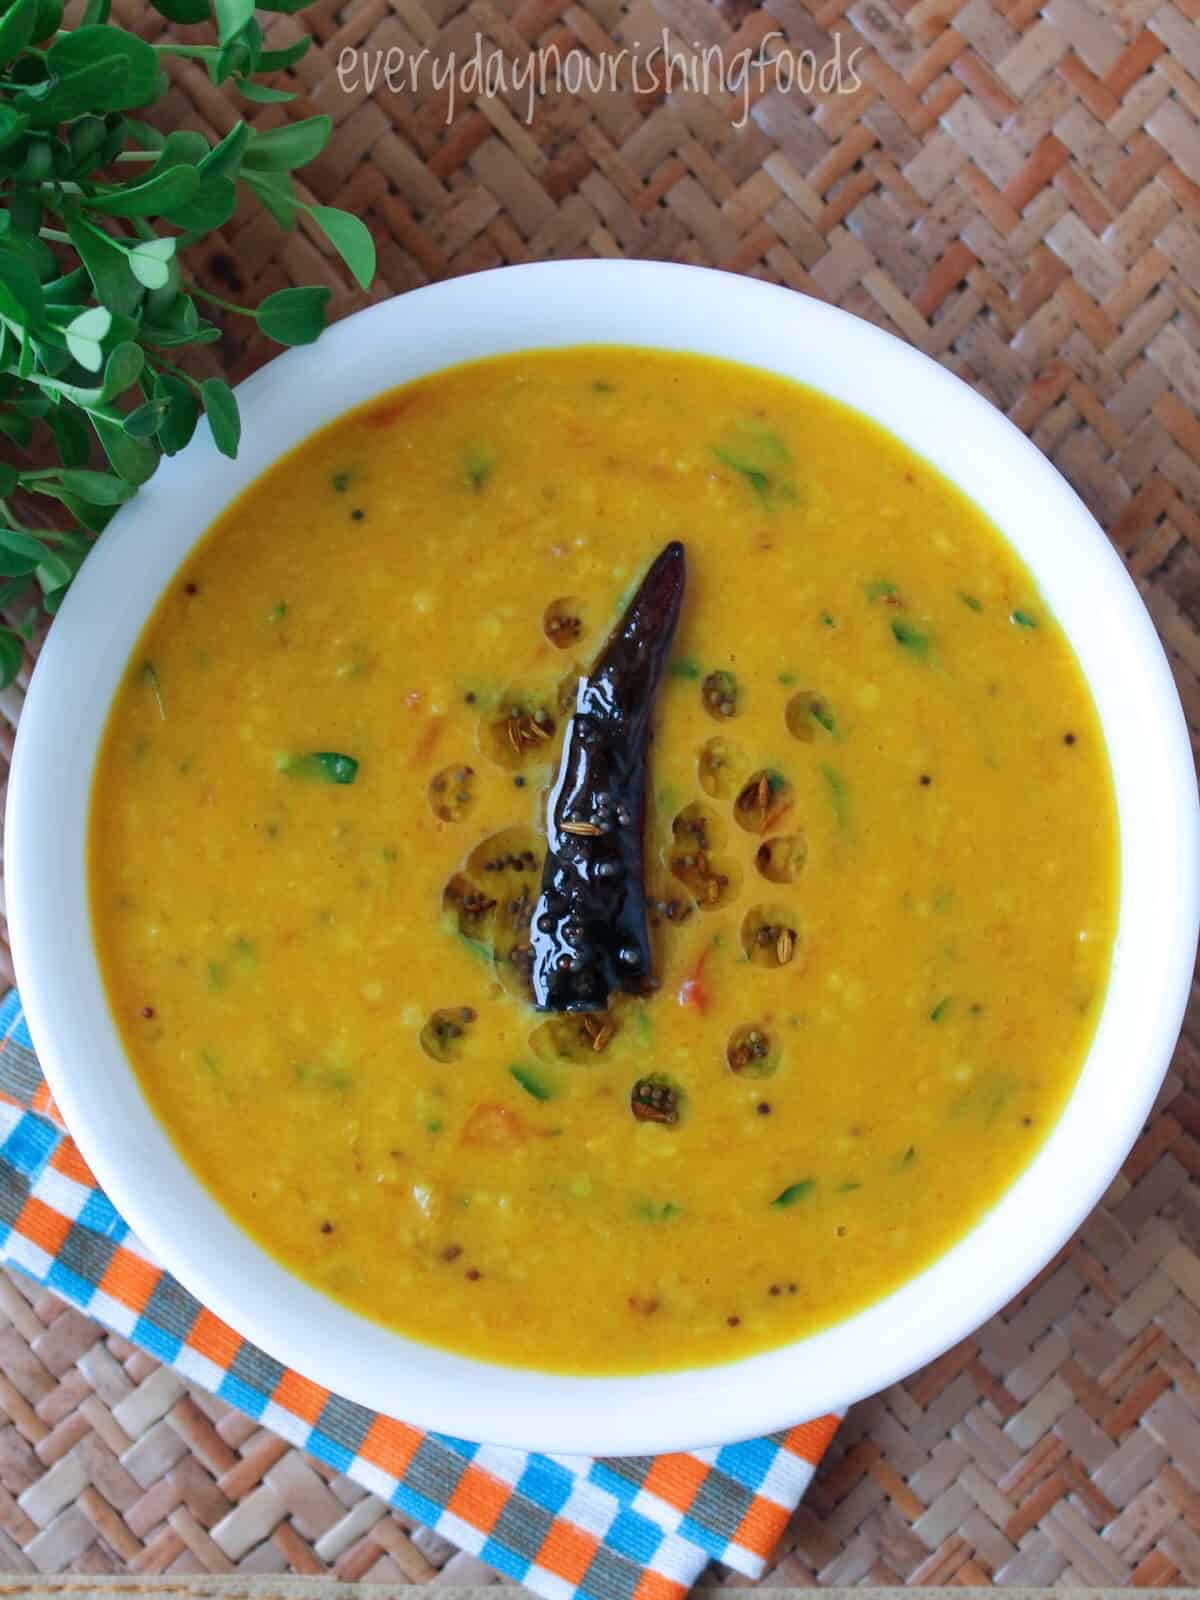 Methi dal - Menthi kura pappu - Everyday Nourishing Foods